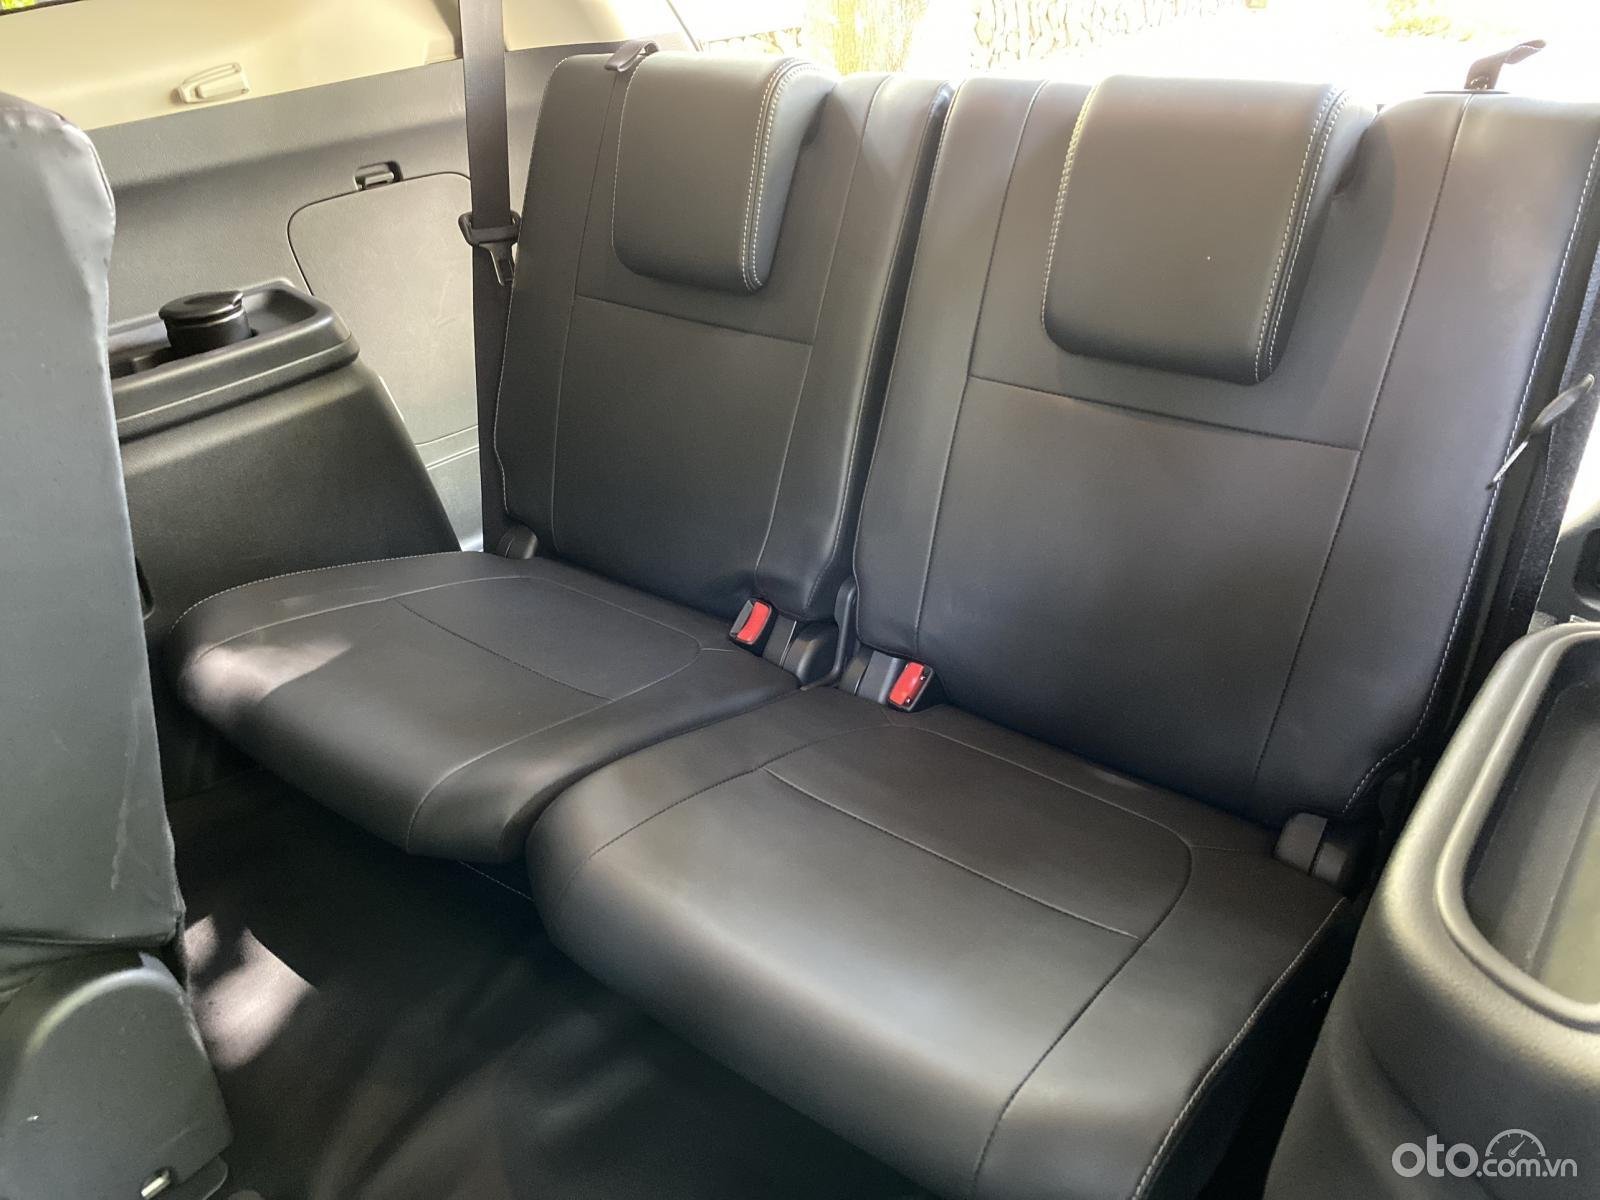 Hàng ghế thứ 3 trên Mitsubishi Outlander 2020 chưa thực sự tối ưu